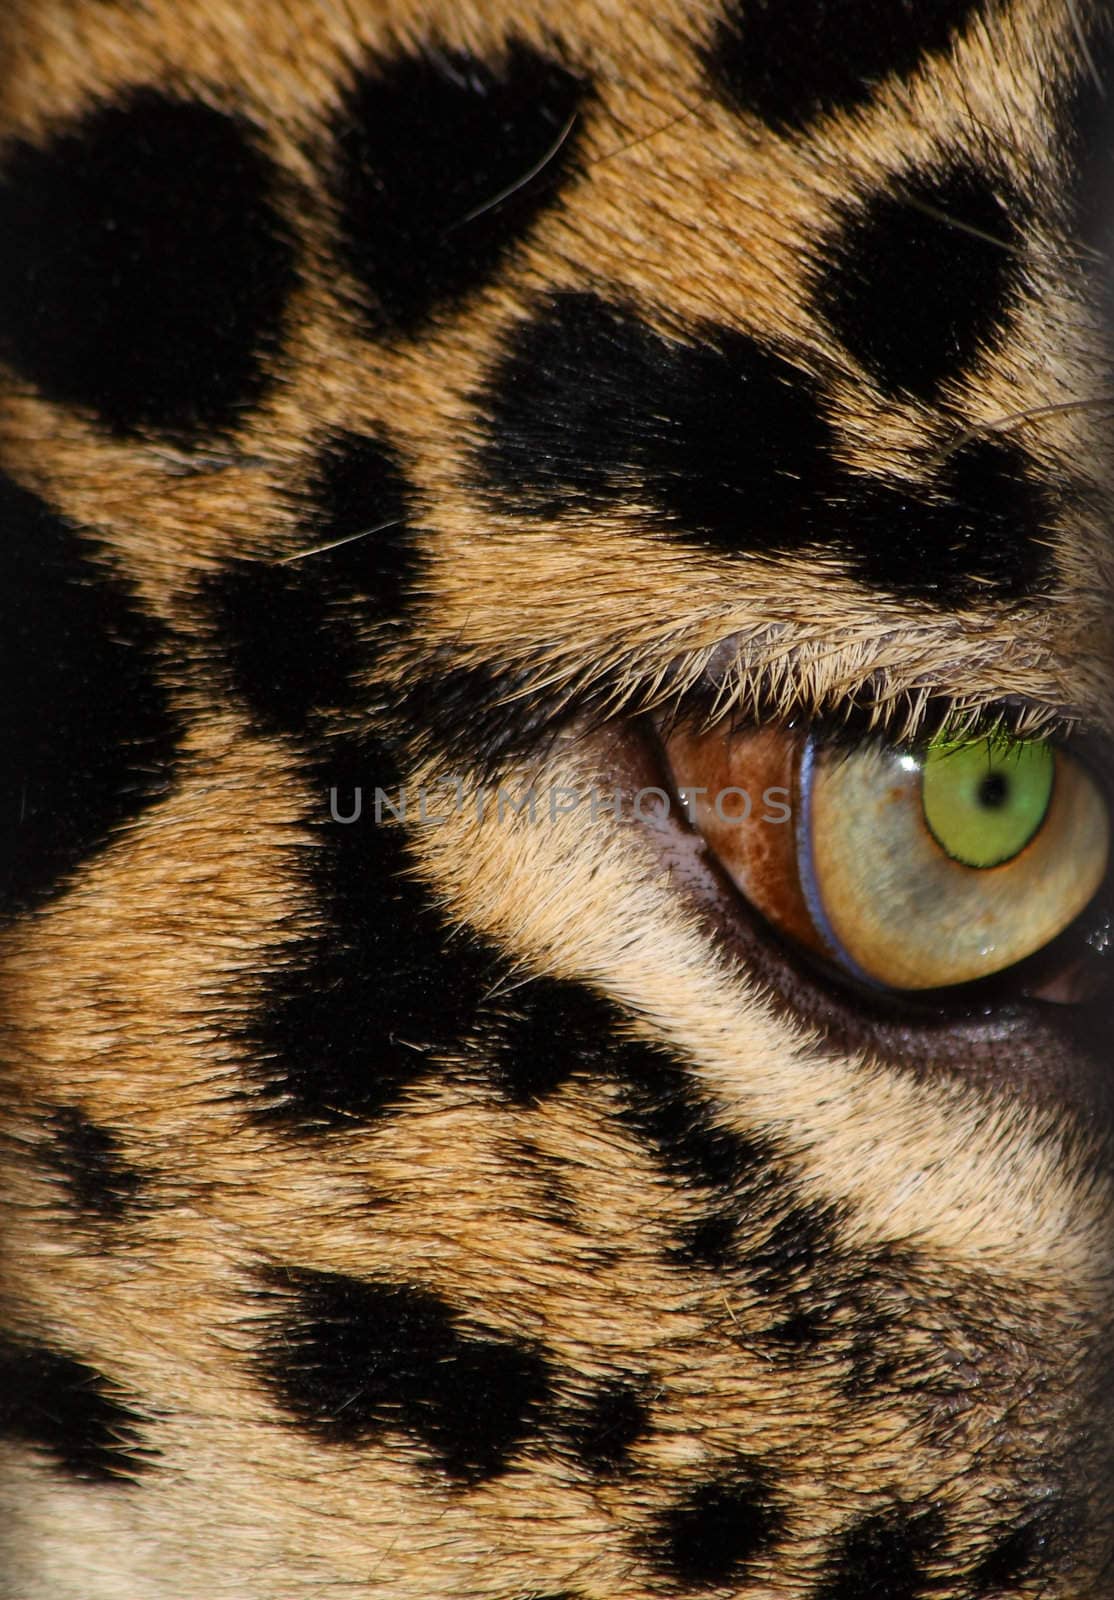 Leopard's eye by Lessadar